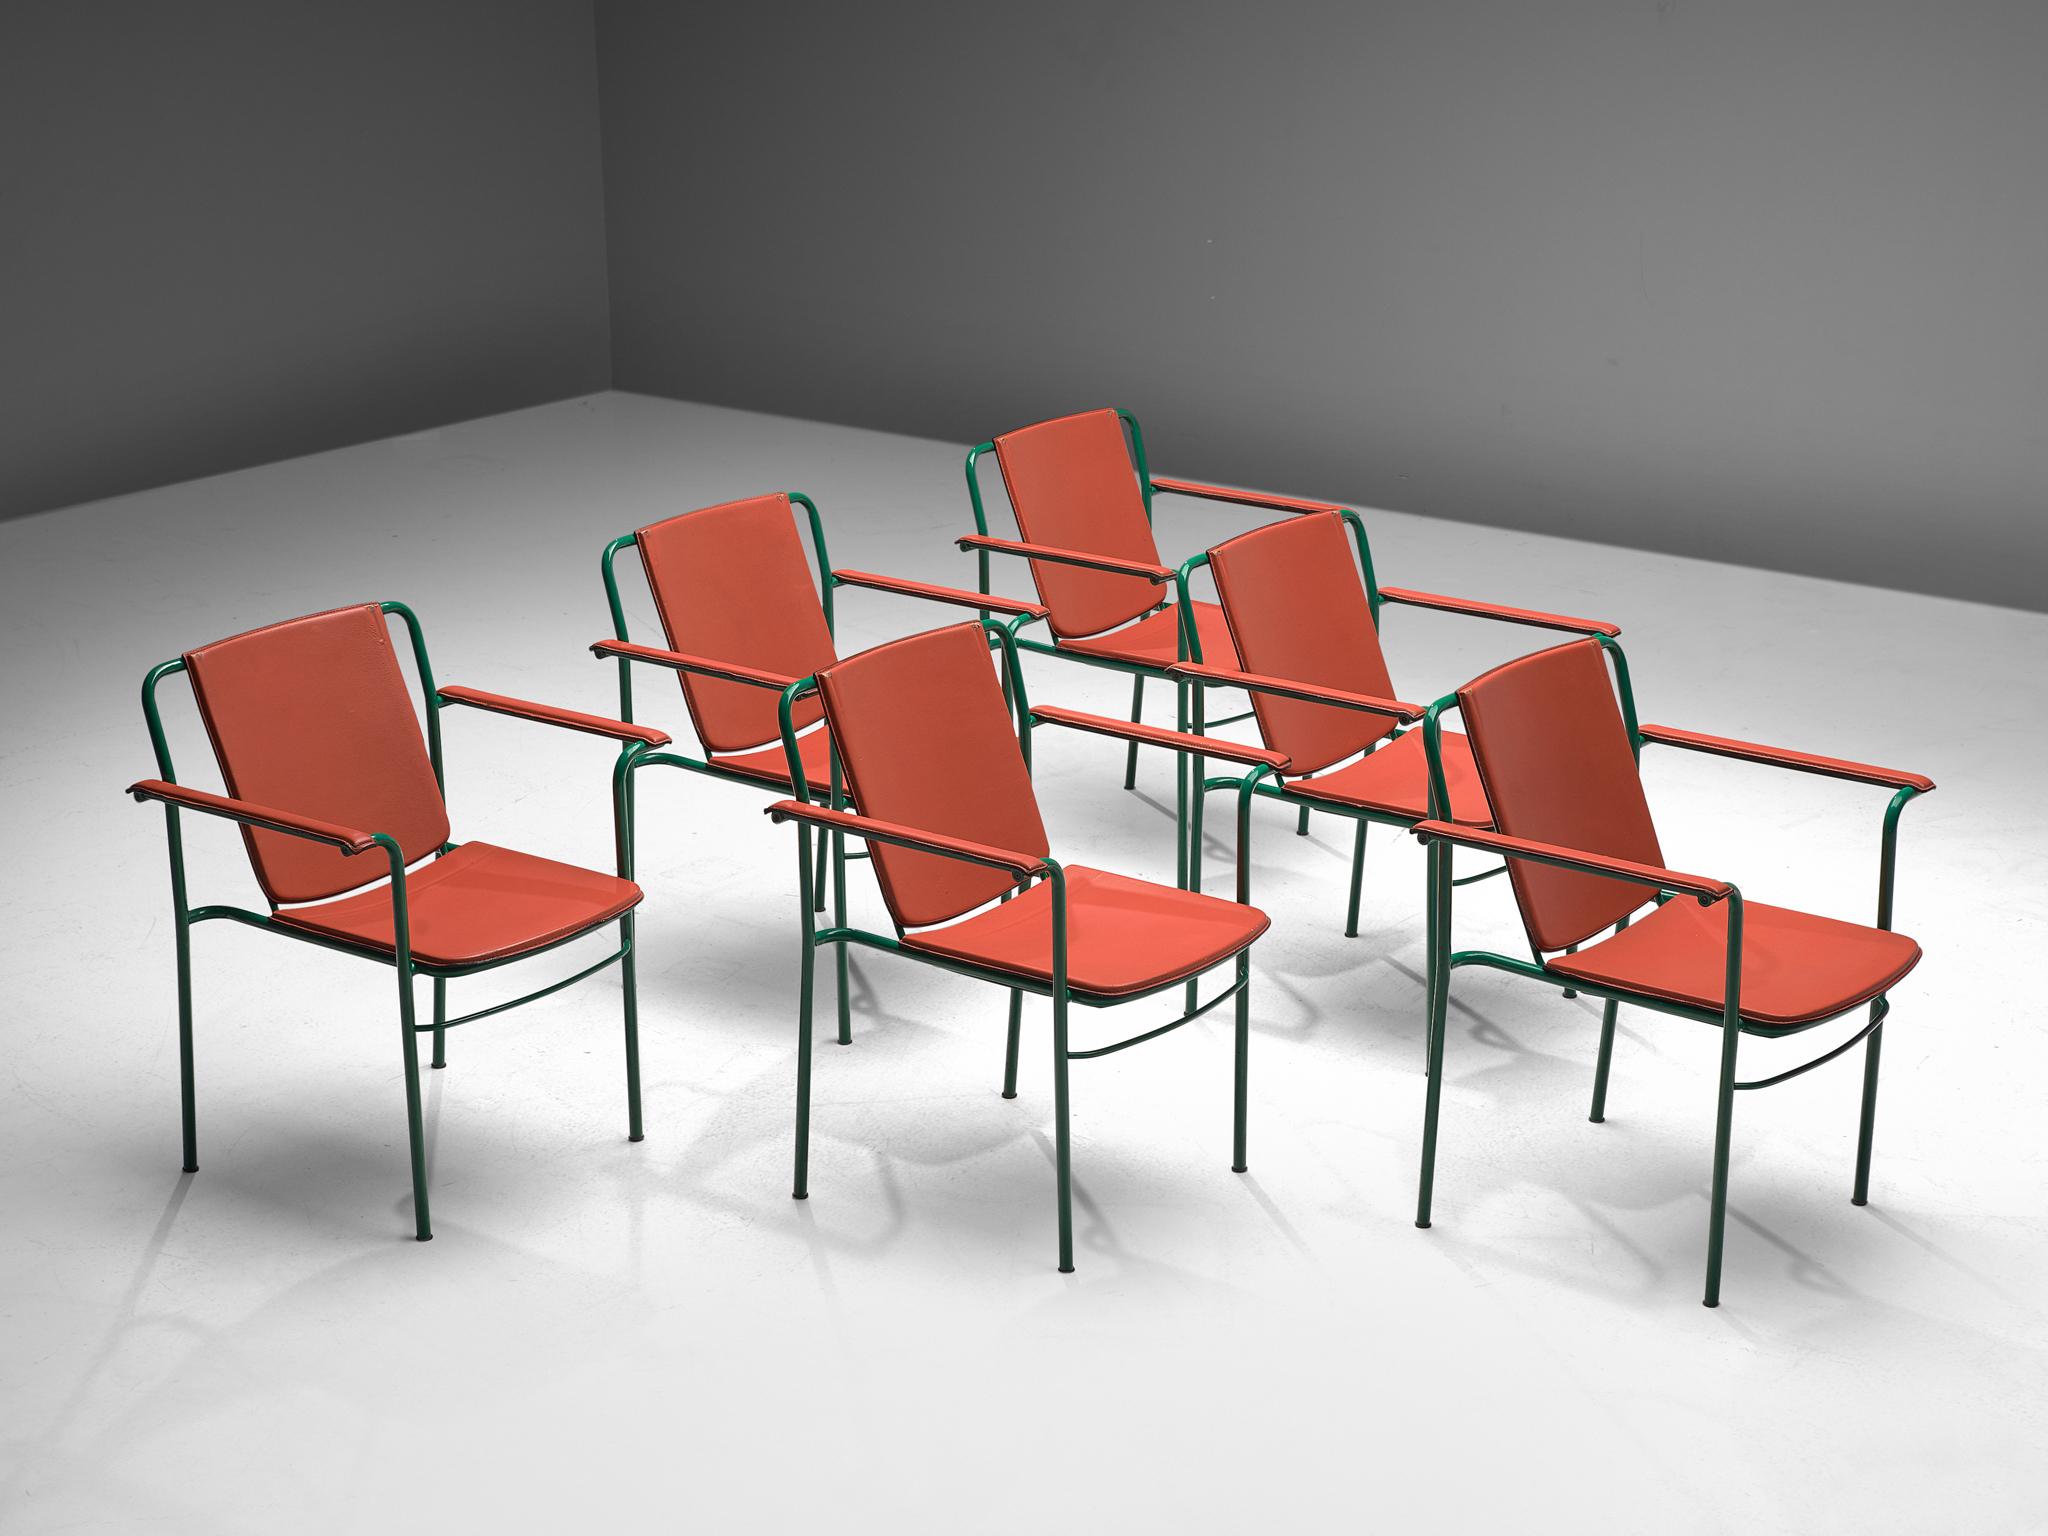 Mario Marenco für Poltrona Frau, Satz von sechs Sesseln Modell 'Movie', Metall und Leder, Italien, 1984.

Sechser-Set von italienischen Sesseln in einer hellen Farbkombination. Die Sitze sind gepolstert und mit korallenrotem Leder bezogen. Die